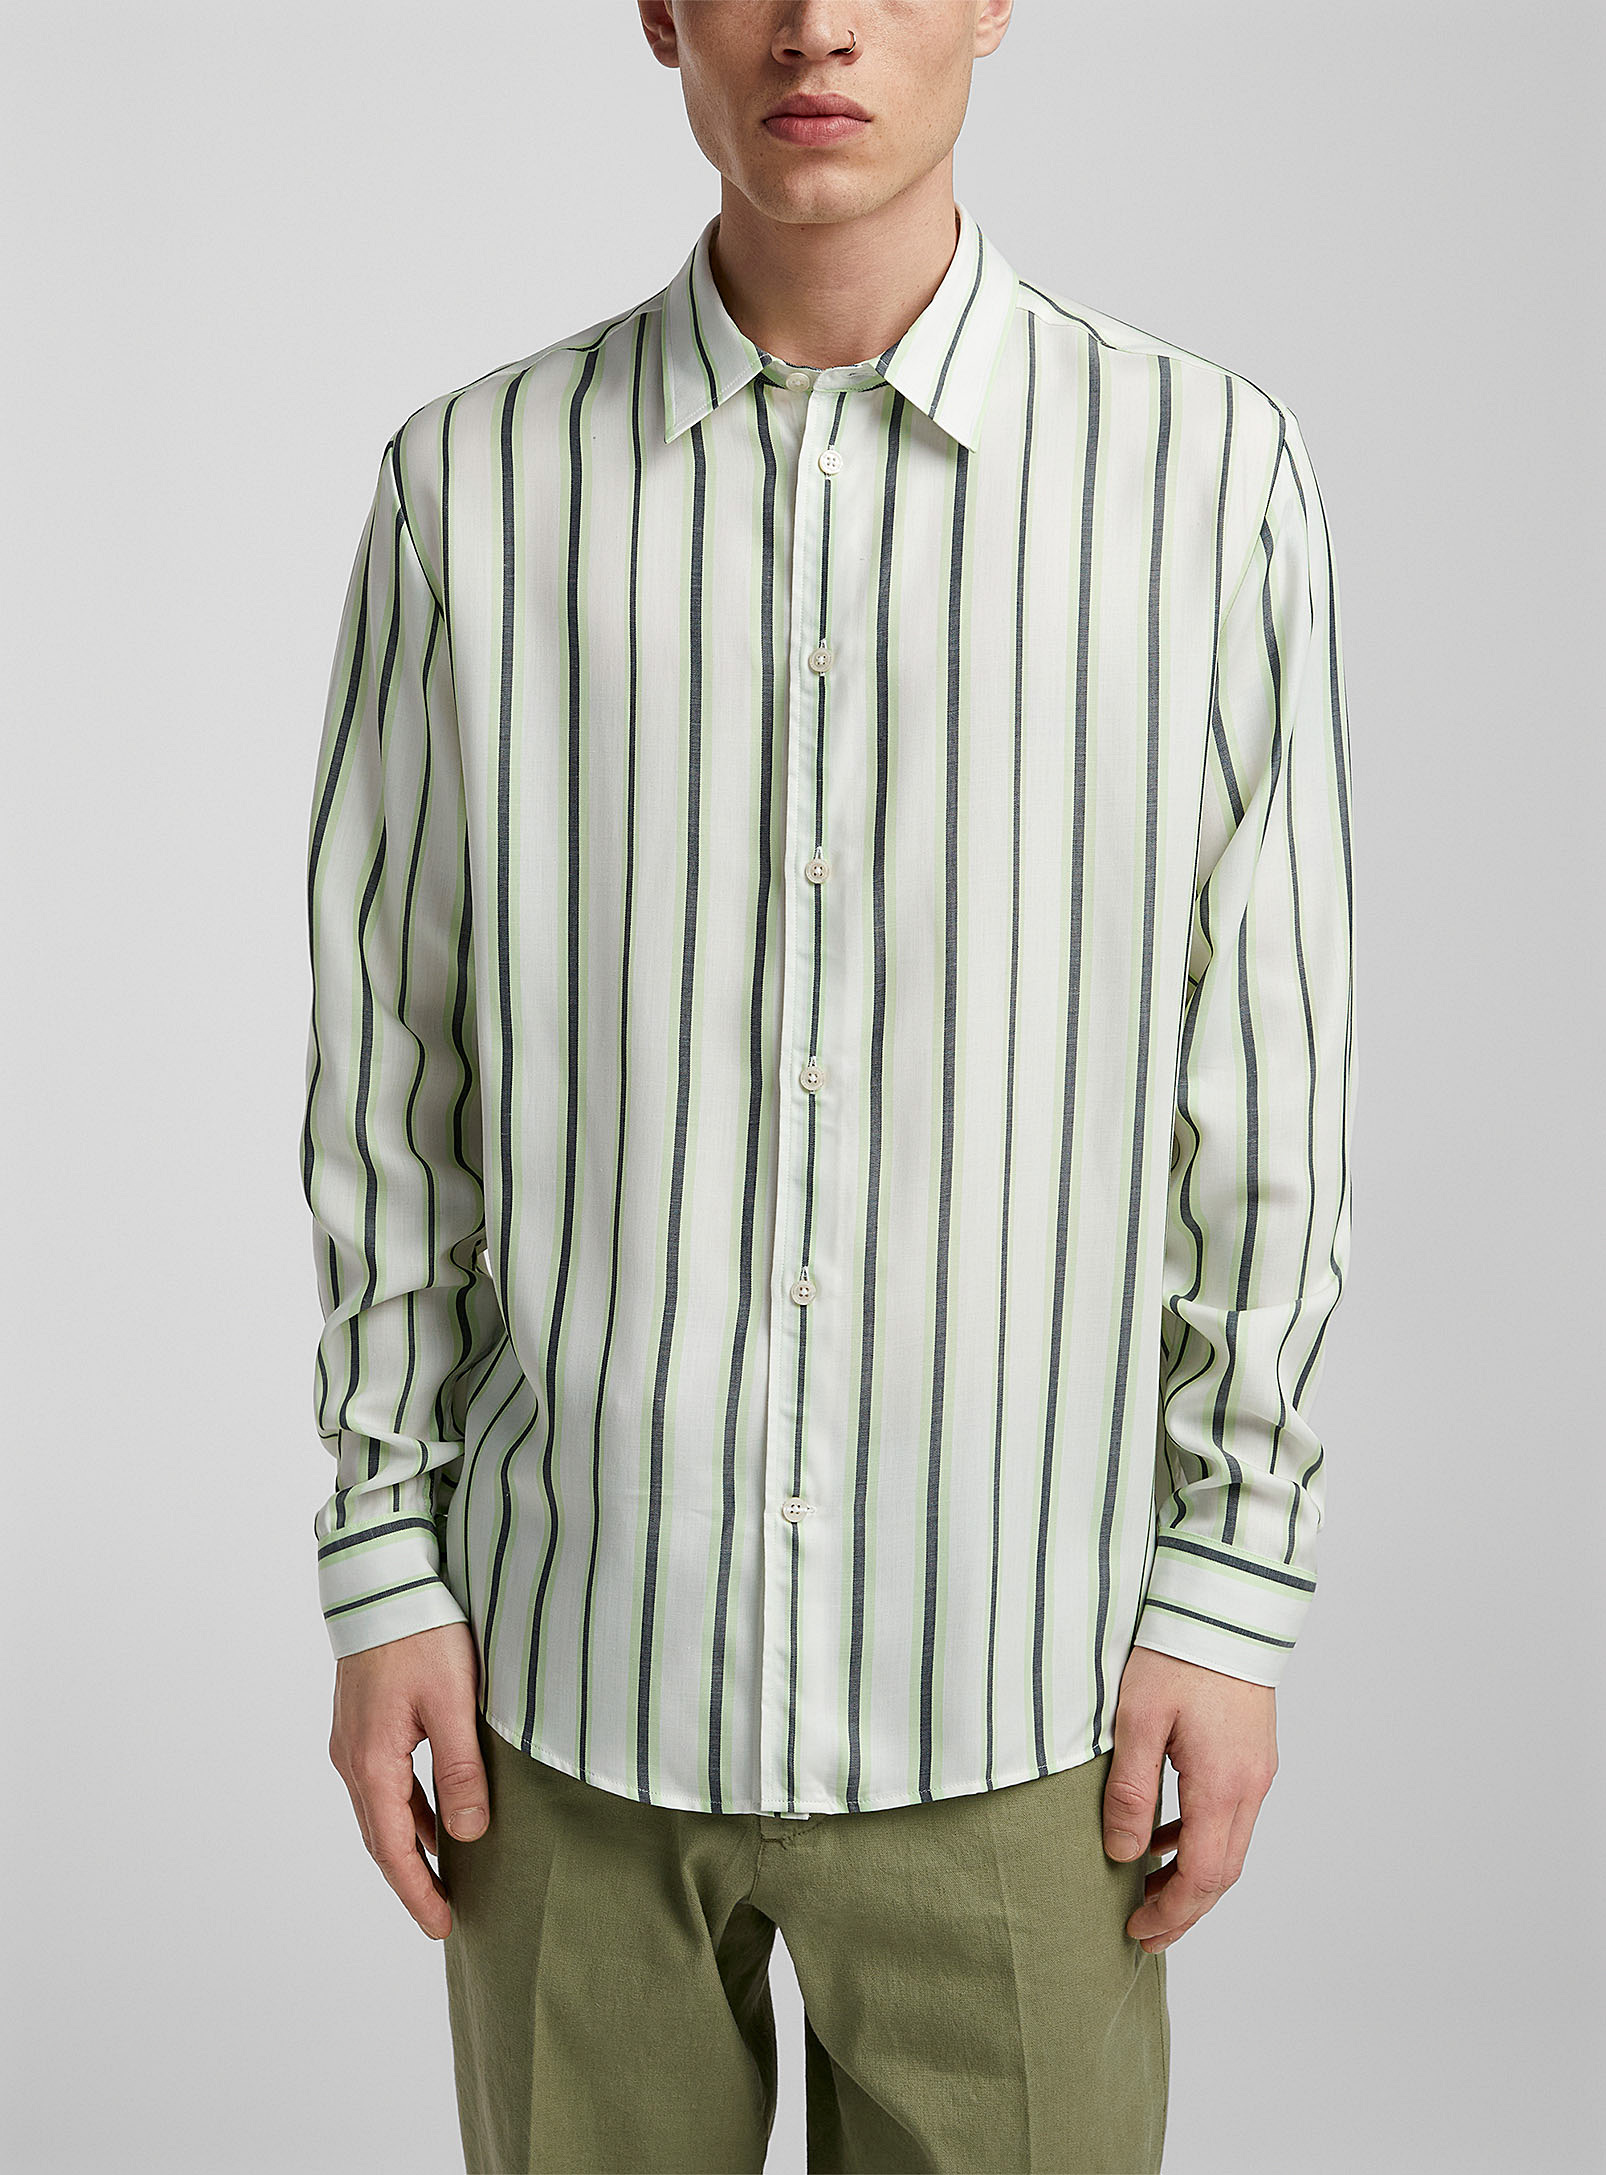 J.Lindeberg - Men's Florindo striped shirt